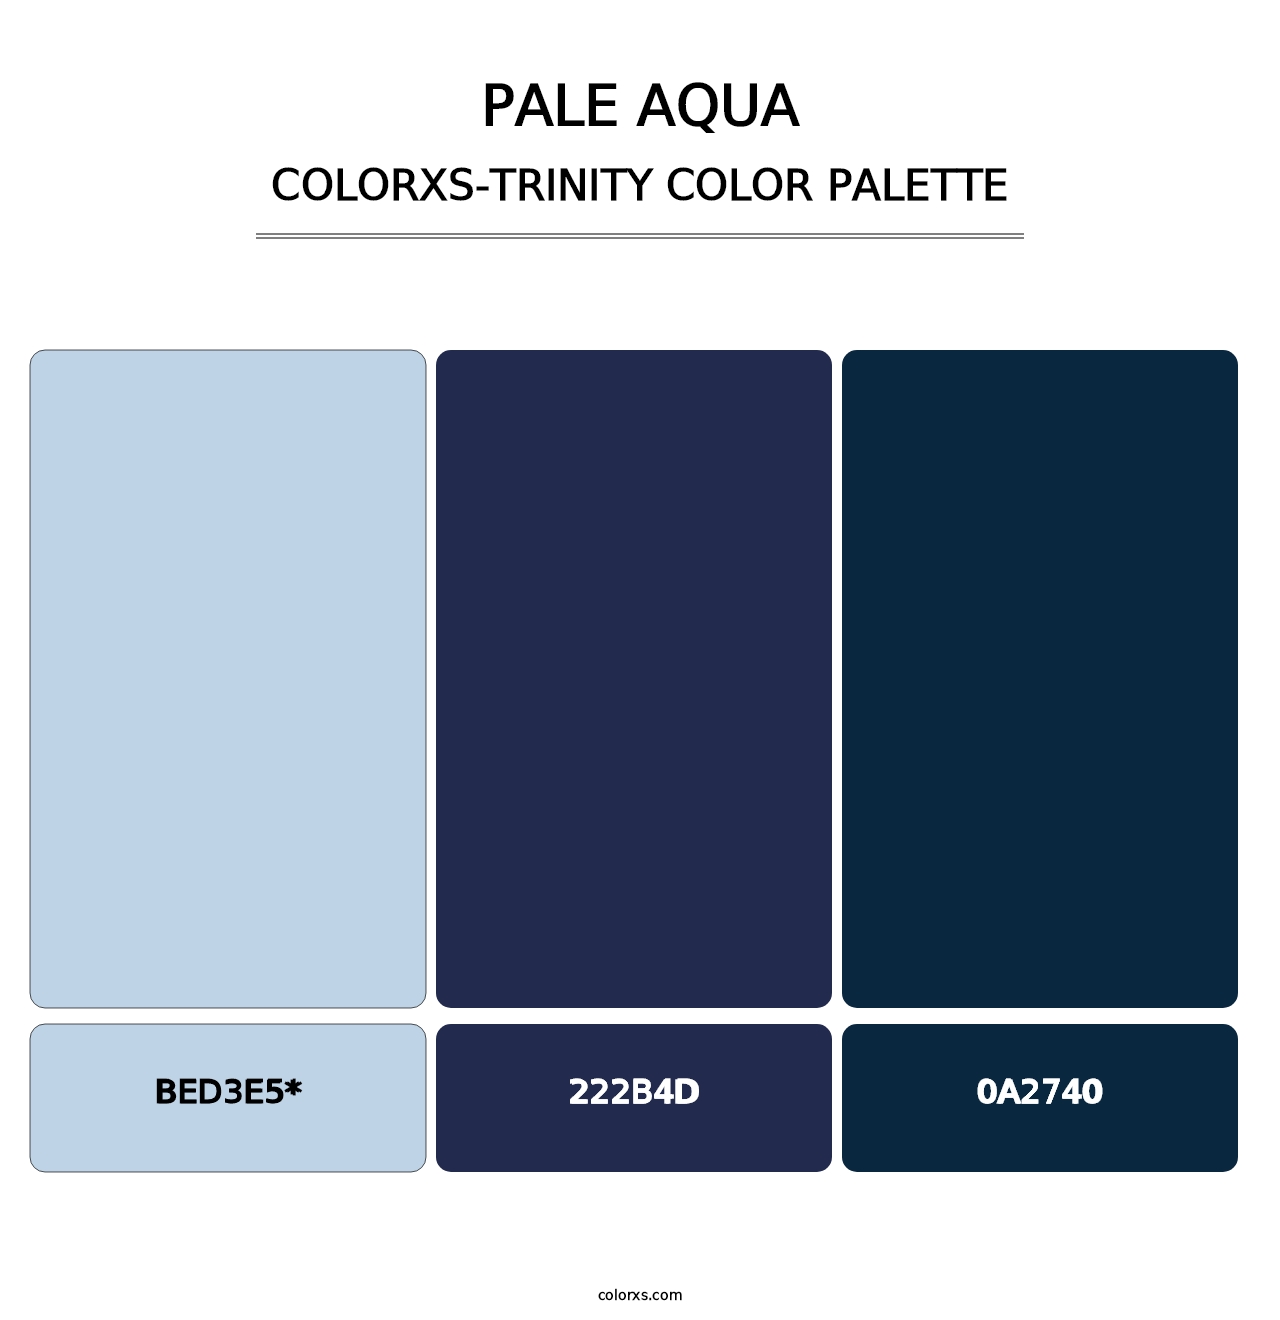 Pale Aqua - Colorxs Trinity Palette